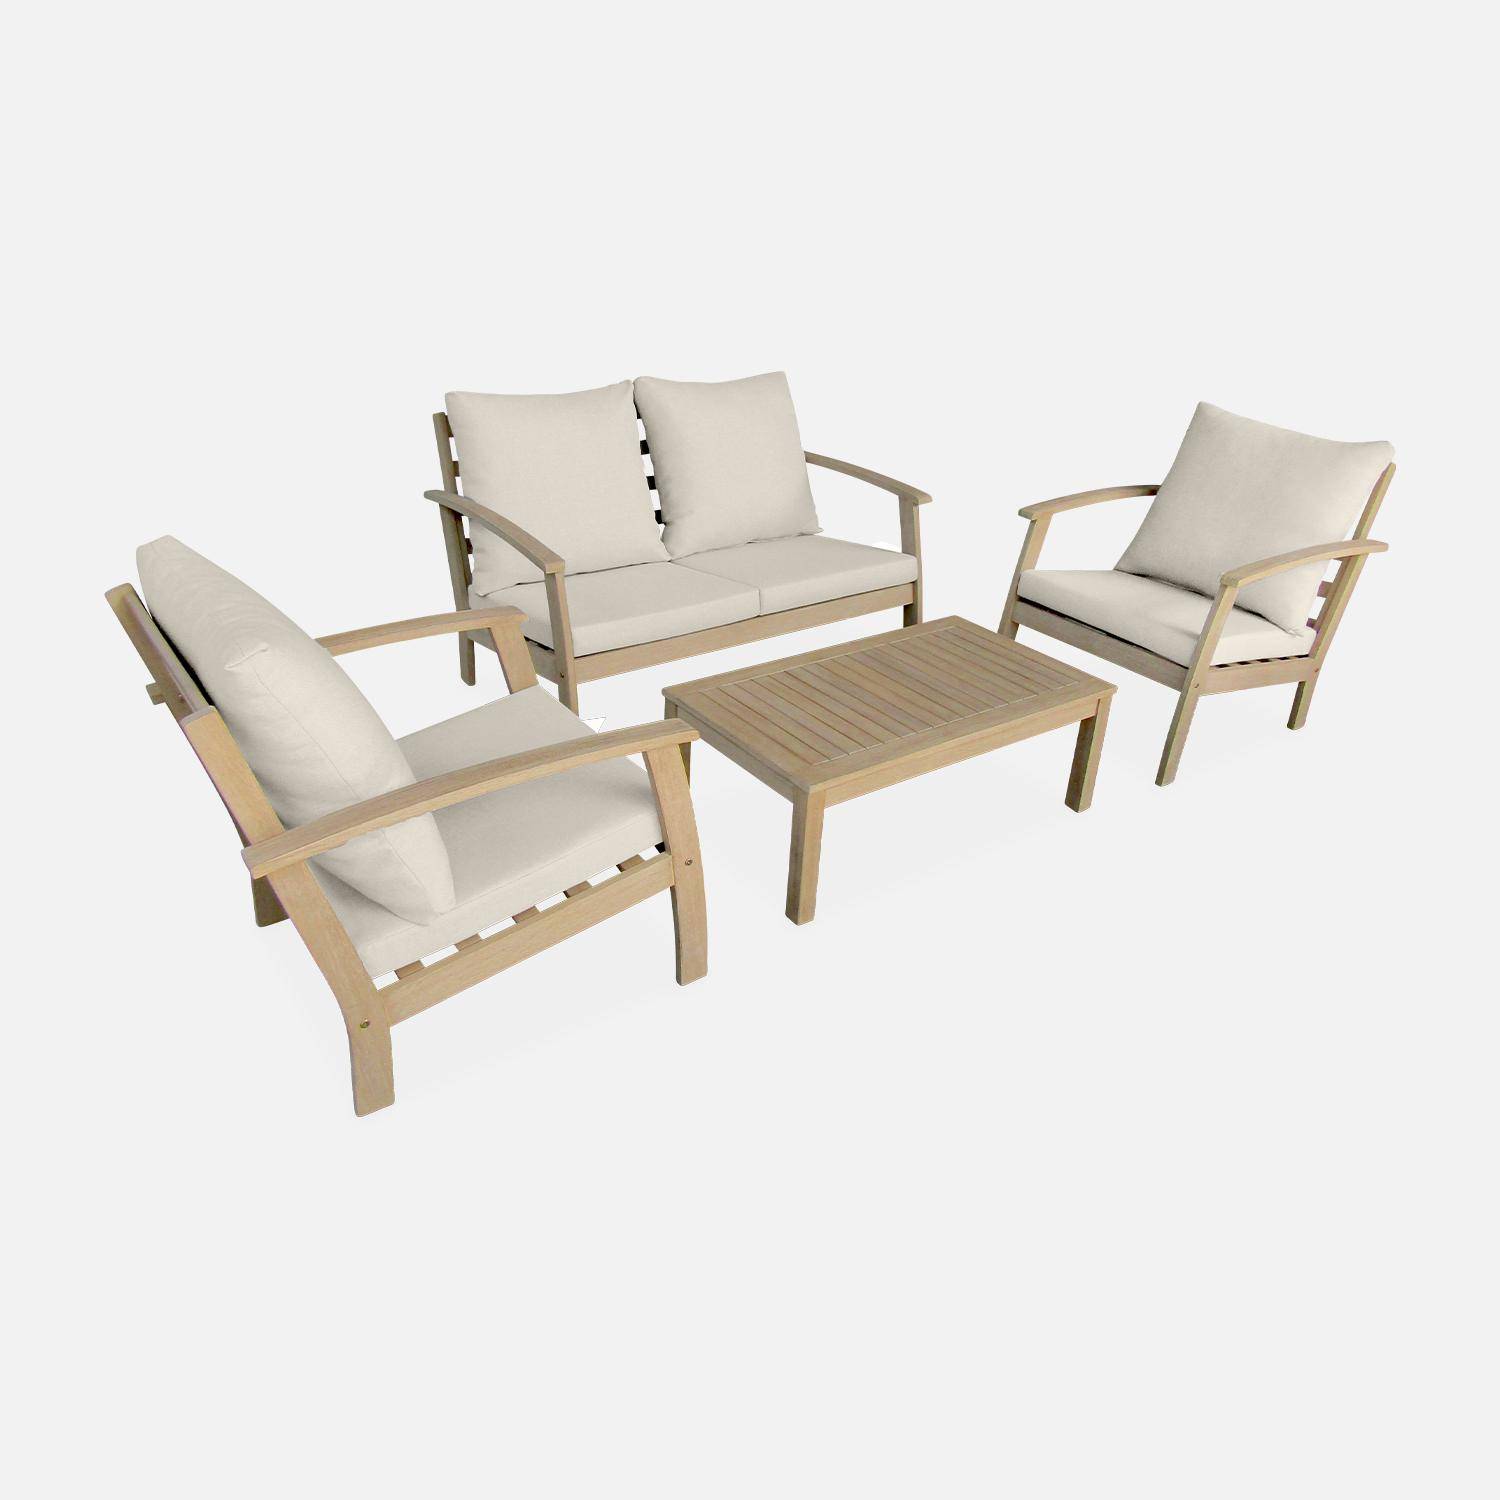 Salon de jardin en bois 4 places - Ushuaïa - Coussins beiges, canapé, fauteuils et table basse en acacia, design Photo3